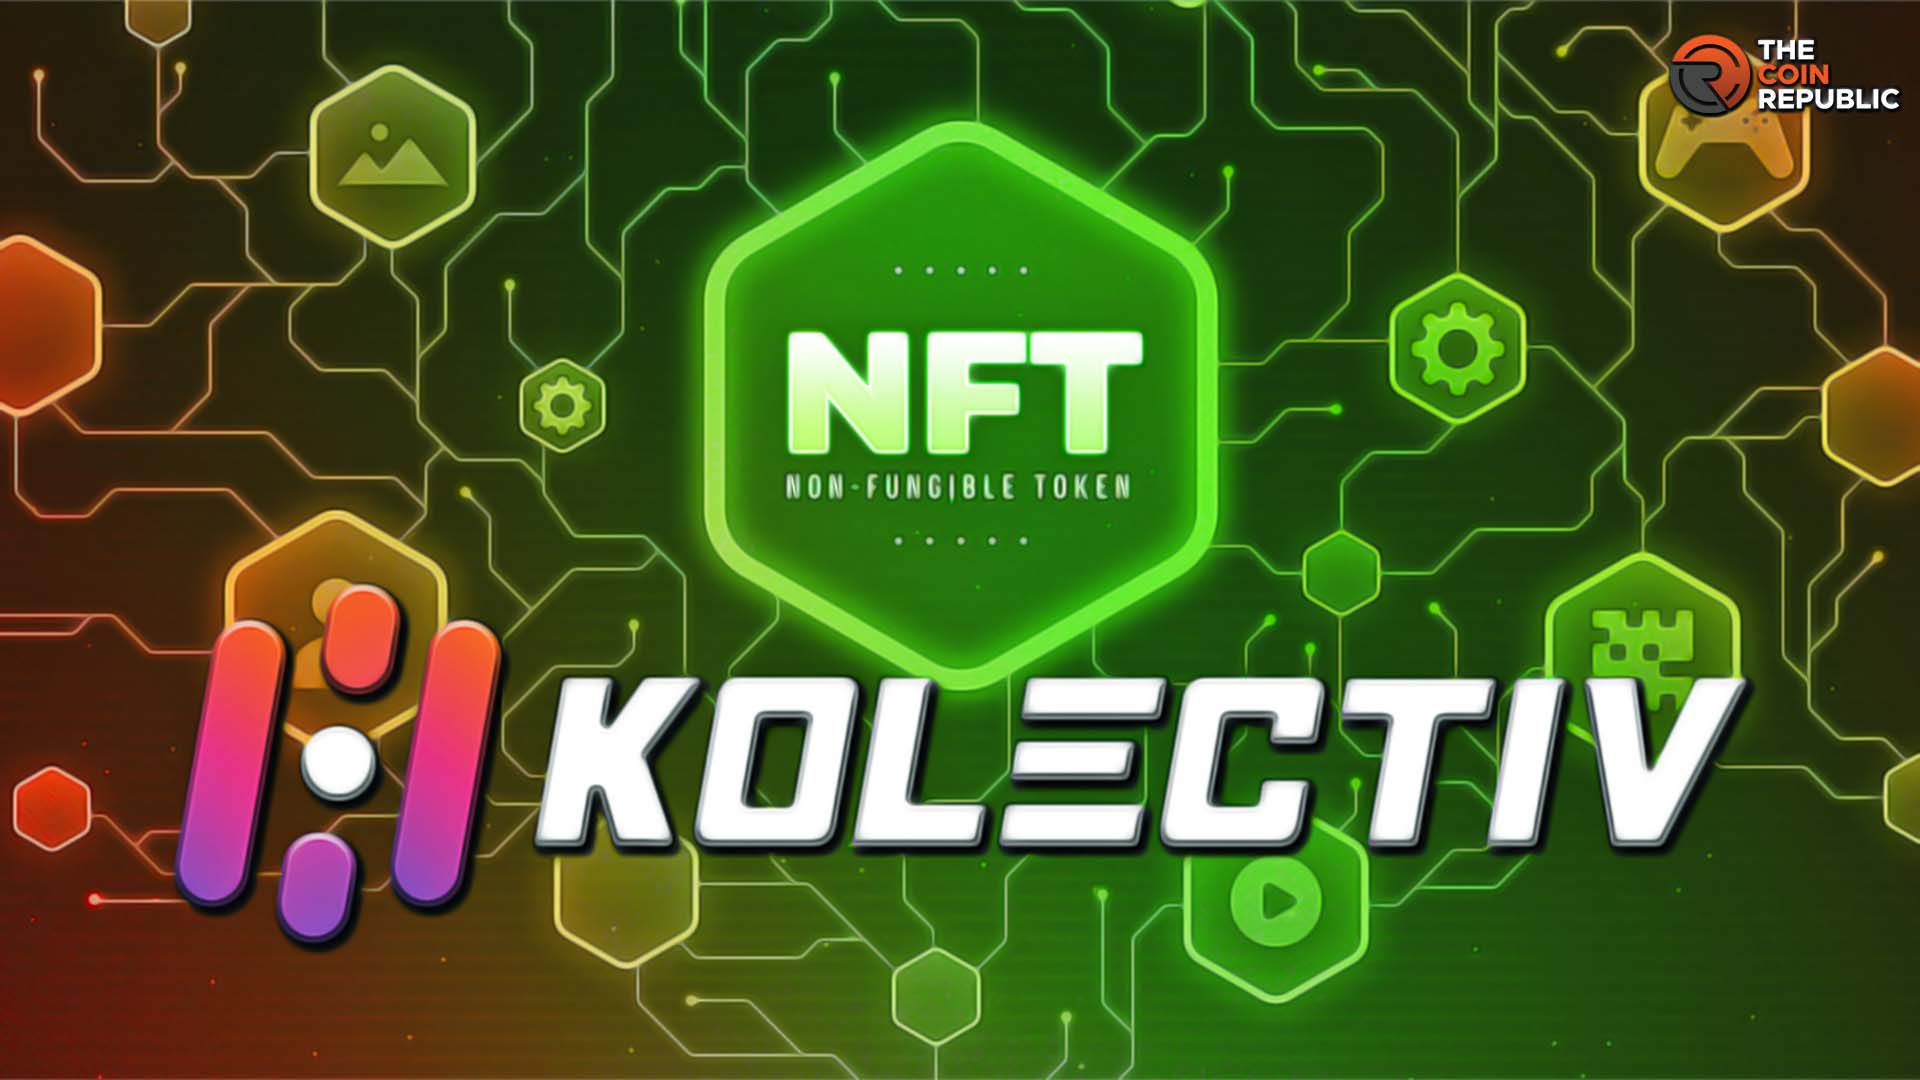 Kolectiv NFT: the Ultimate Platform for Artists and Collectors